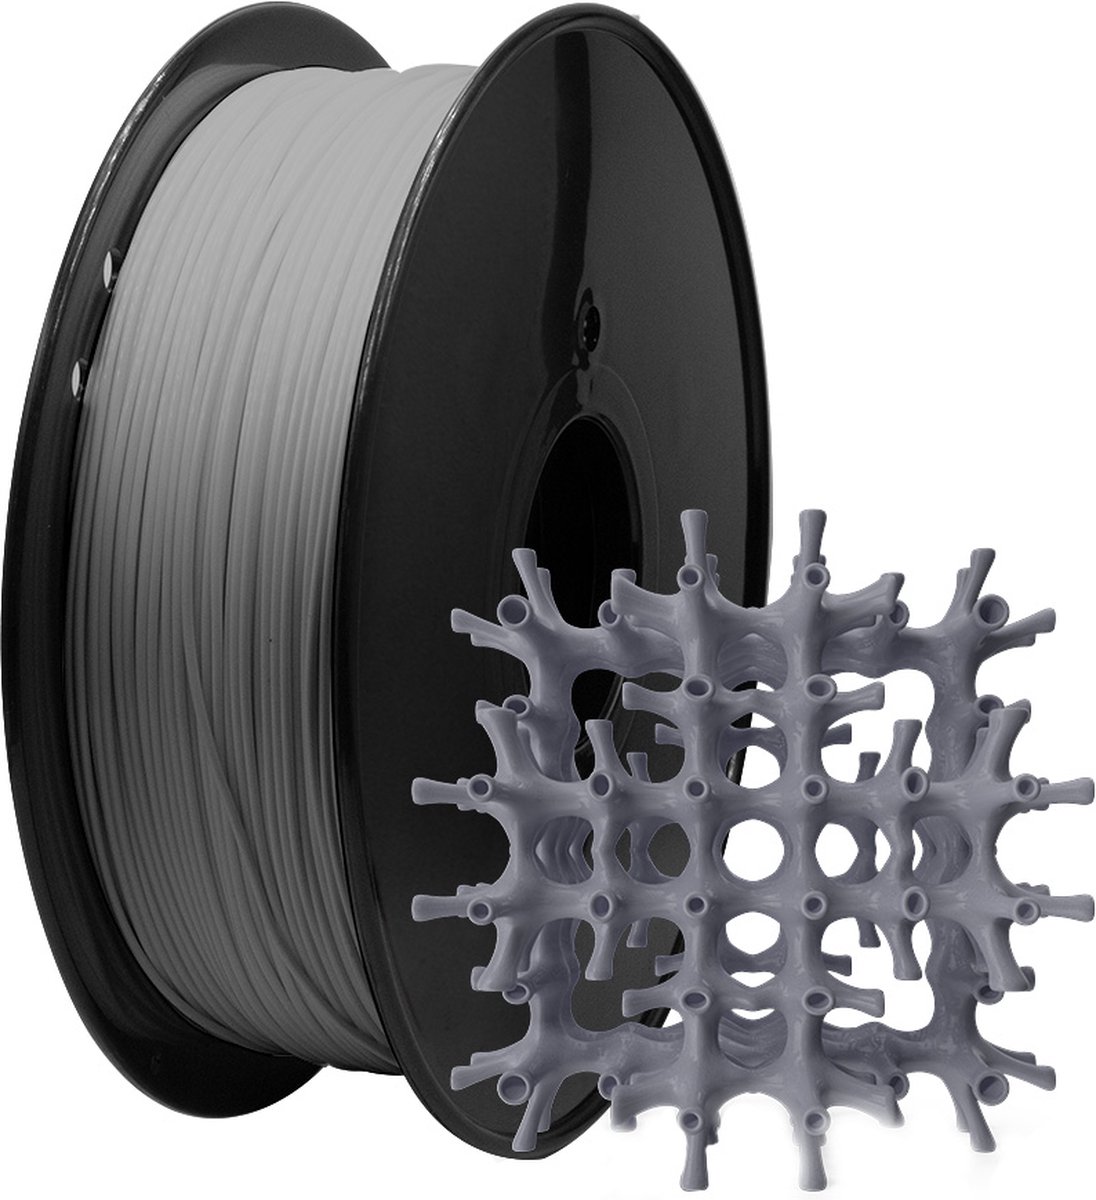 MMOBIEL PLA Filament 3D Printer 1.75mm - Lengte 330m - 200 x 200mm - 1kg Spoel - Groen